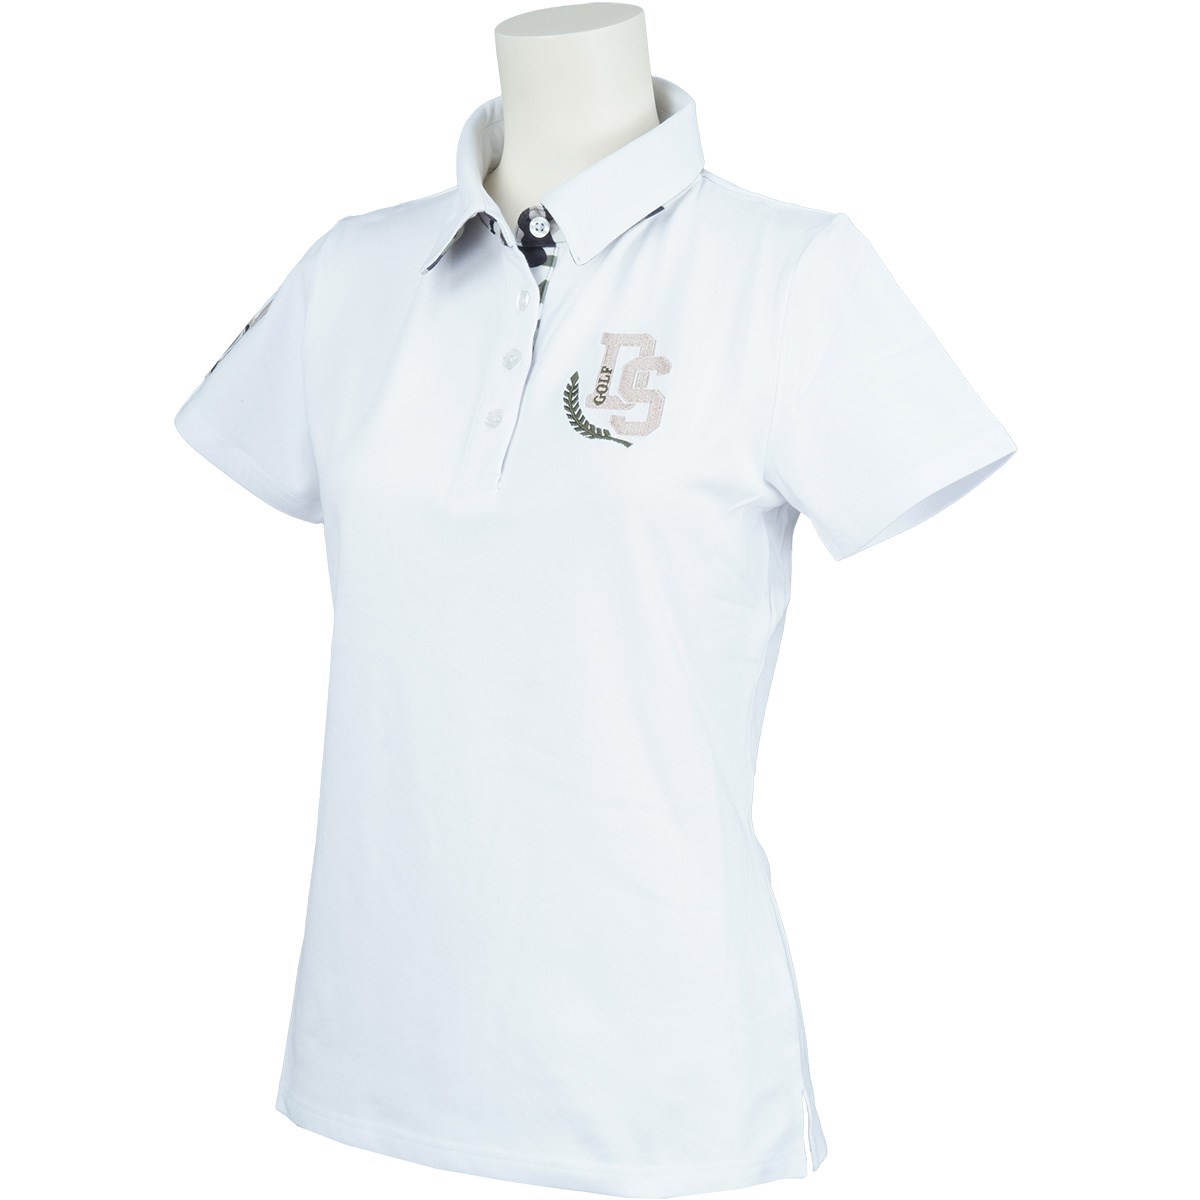 [定番モデル] デルソルゴルフ カモフラ柄バックスカル 半袖ポロシャツ ホワイト レディース ゴルフウェア